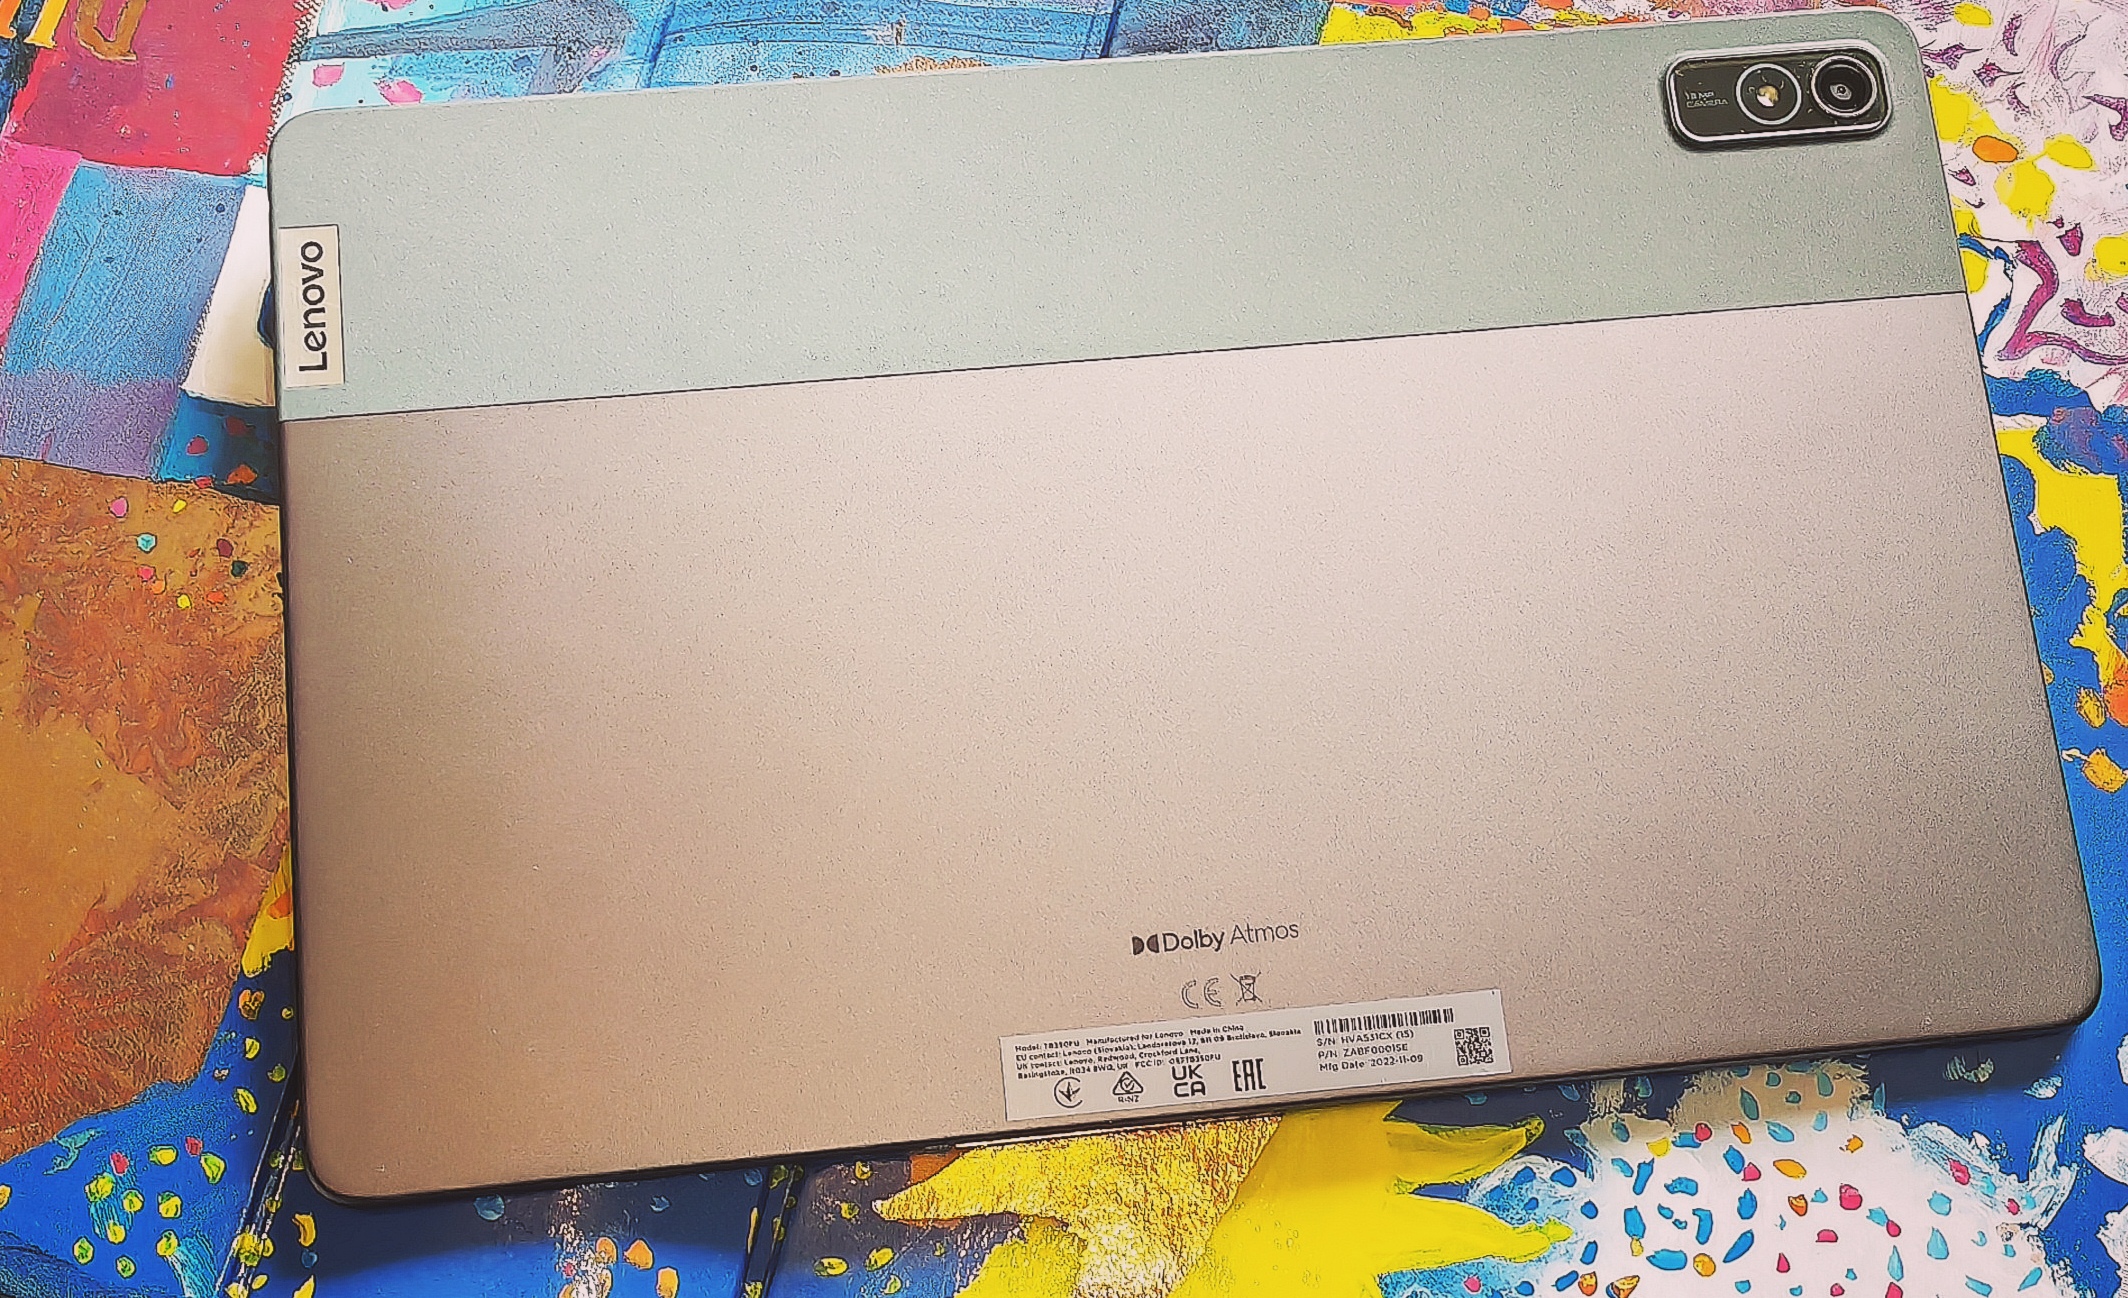 Il tablet Lenovo Tab P11 in super offerta a meno di 150